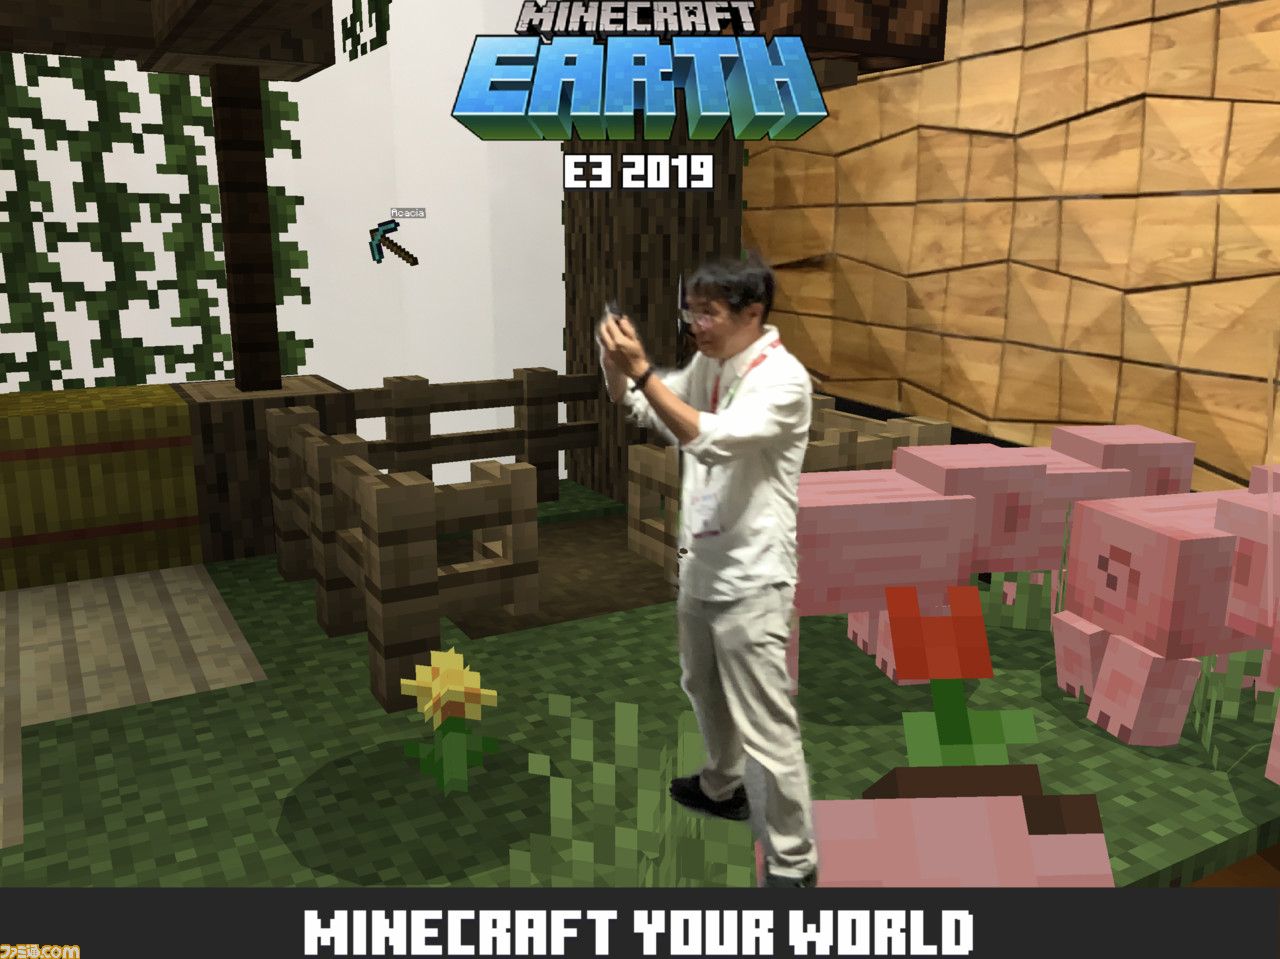 Minecraft Earth をひと足早く体験 マイクラ の楽しさを世界に拡張するとんでもないアプリだった 19 ファミ通 Com